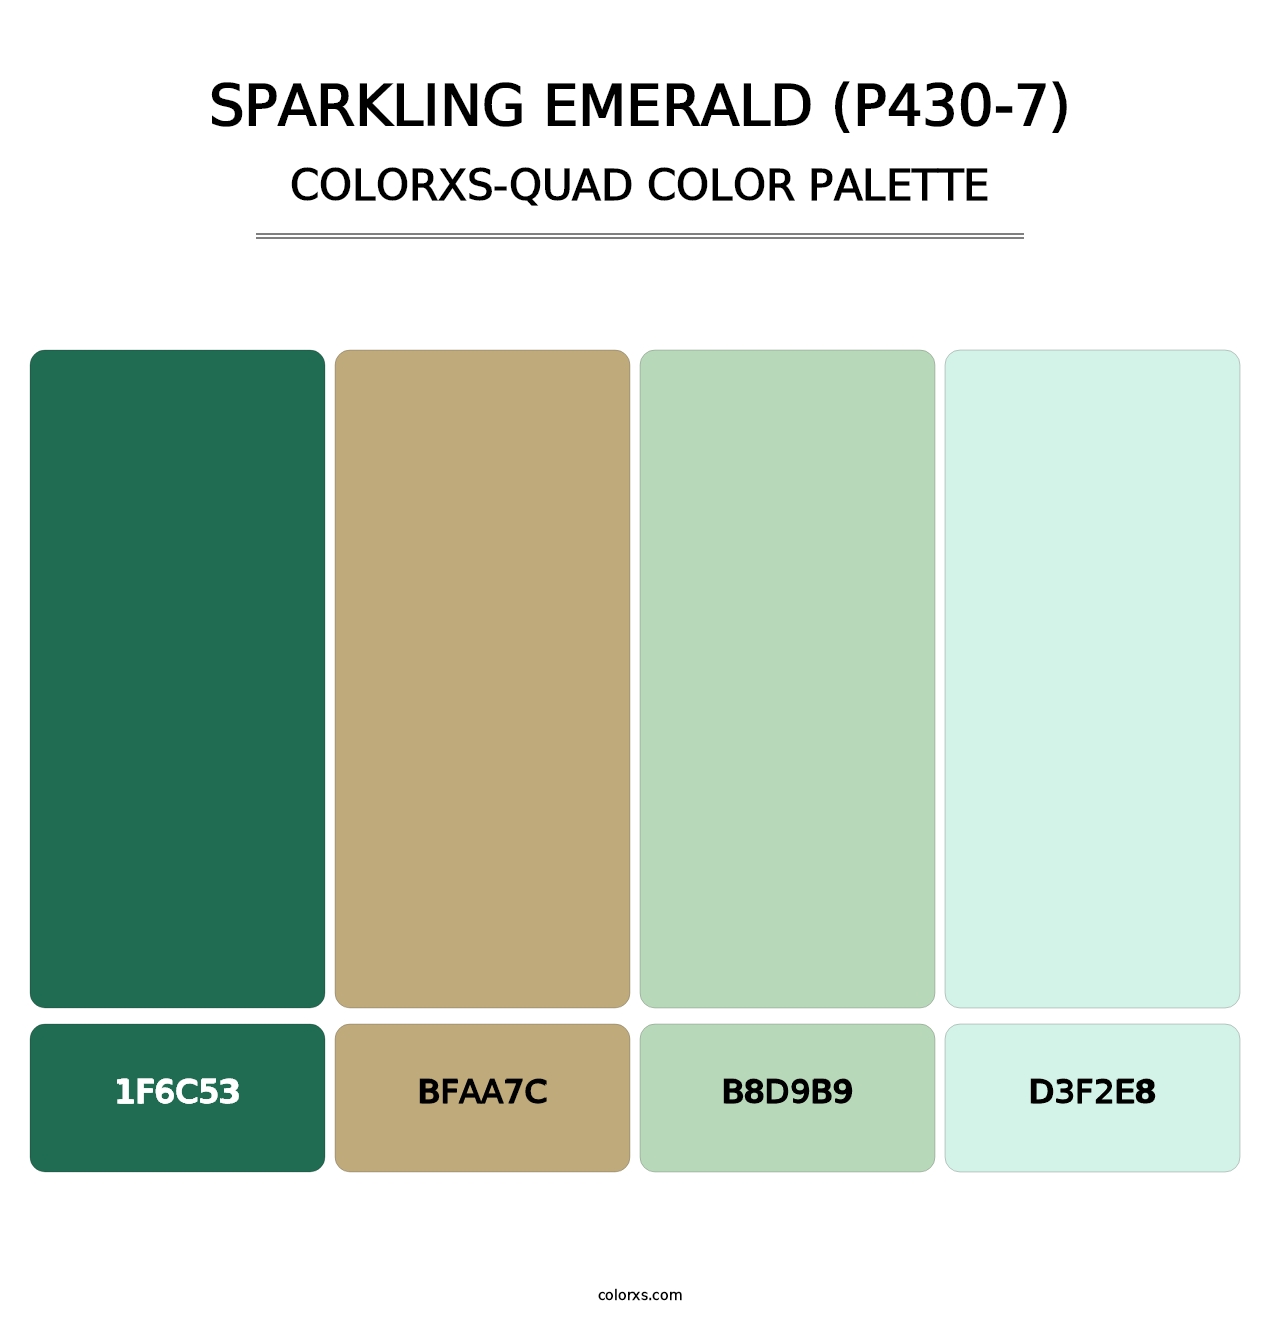 Sparkling Emerald (P430-7) - Colorxs Quad Palette